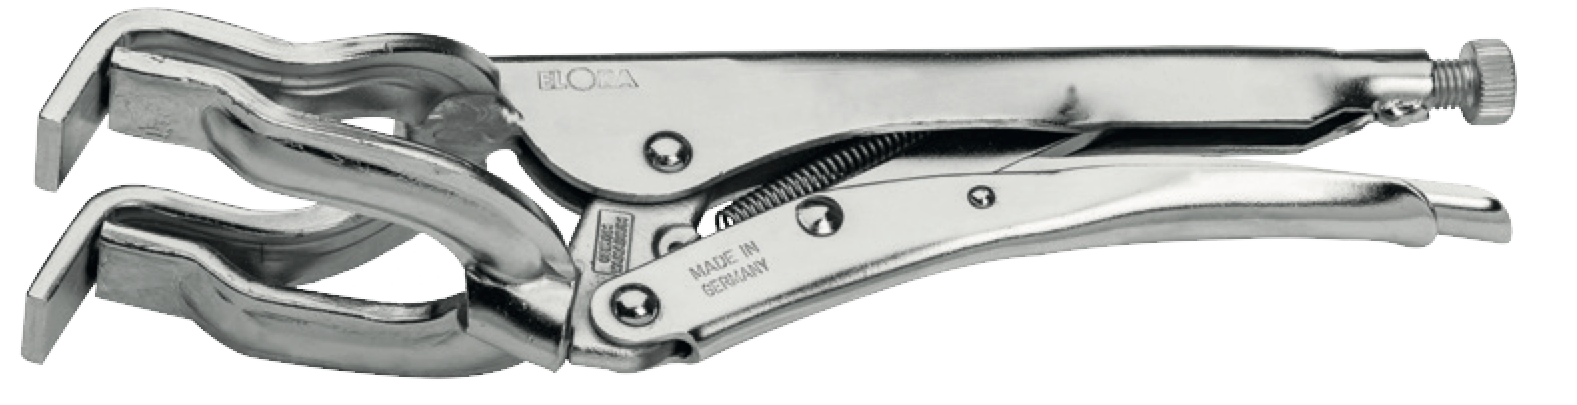 ELORA 511-280 Pipe Welders Grip Plier (ELORA Tools) - Premium Welders Grip Plier from ELORA - Shop now at Yew Aik.